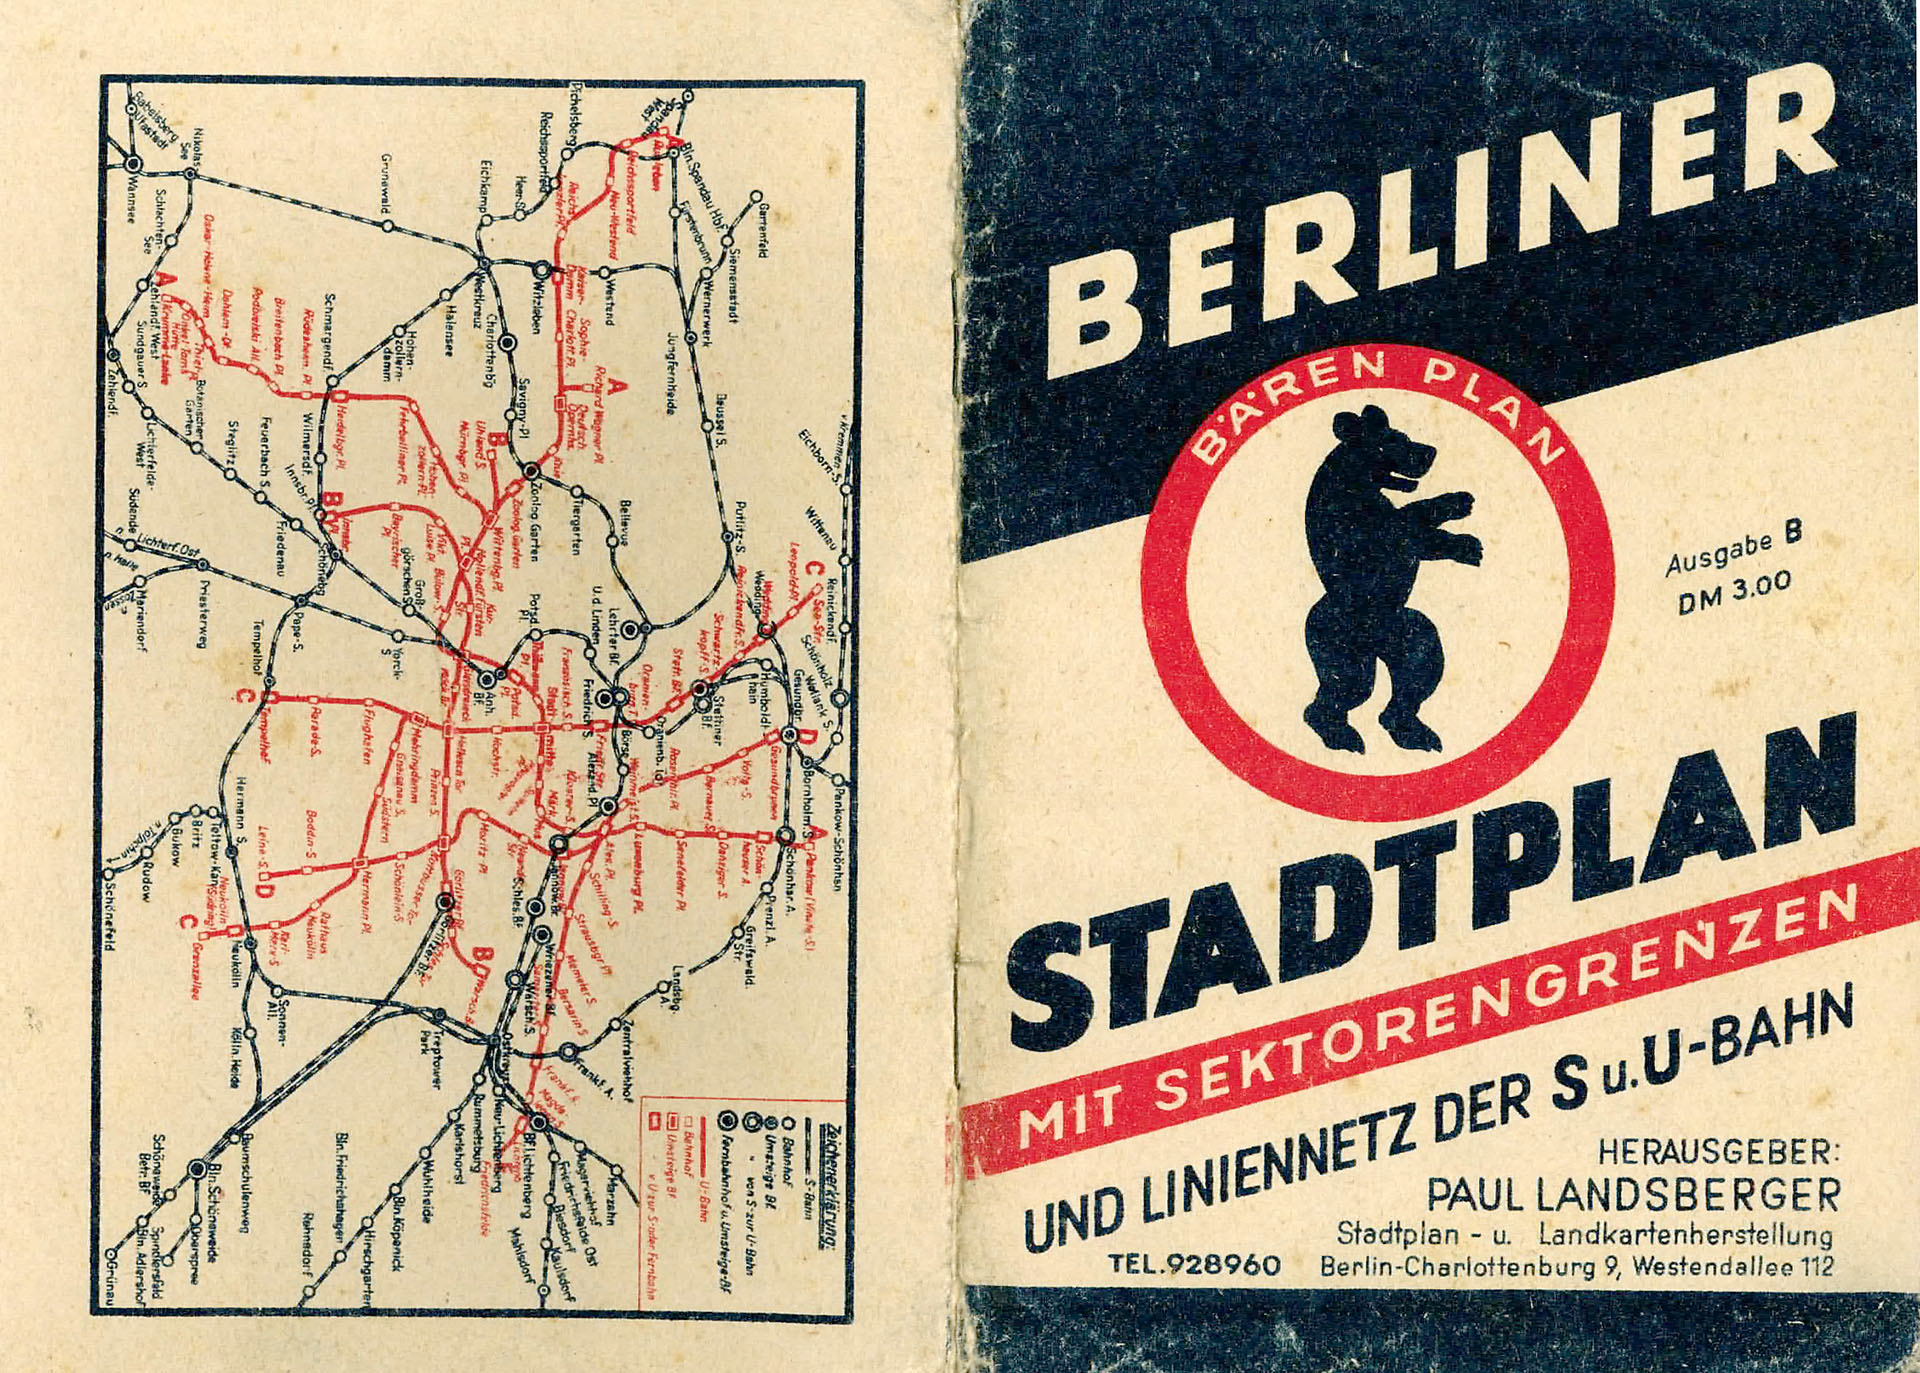 Berliner Stadtplan mit Sektorengrenzen - Paul  Landsberger Stadtplan- und Landkartenherstellung